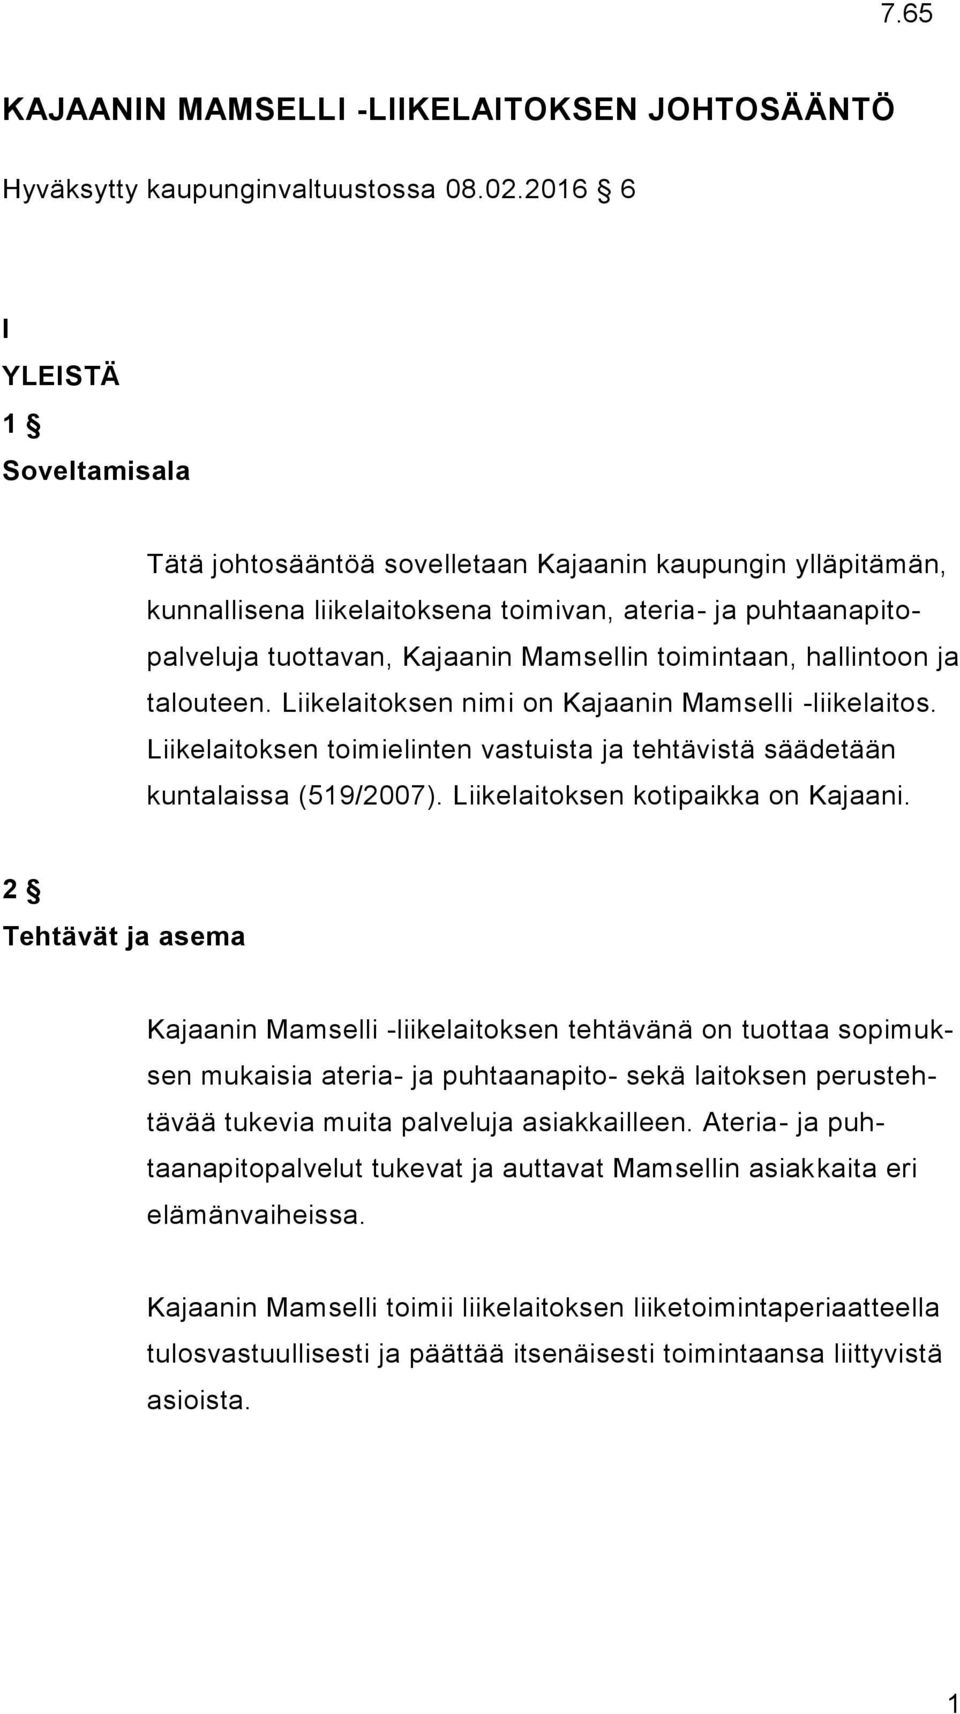 toimintaan, hallintoon ja talouteen. Liikelaitoksen nimi on Kajaanin Mamselli -liikelaitos. Liikelaitoksen toimielinten vastuista ja tehtävistä säädetään kuntalaissa (519/2007).